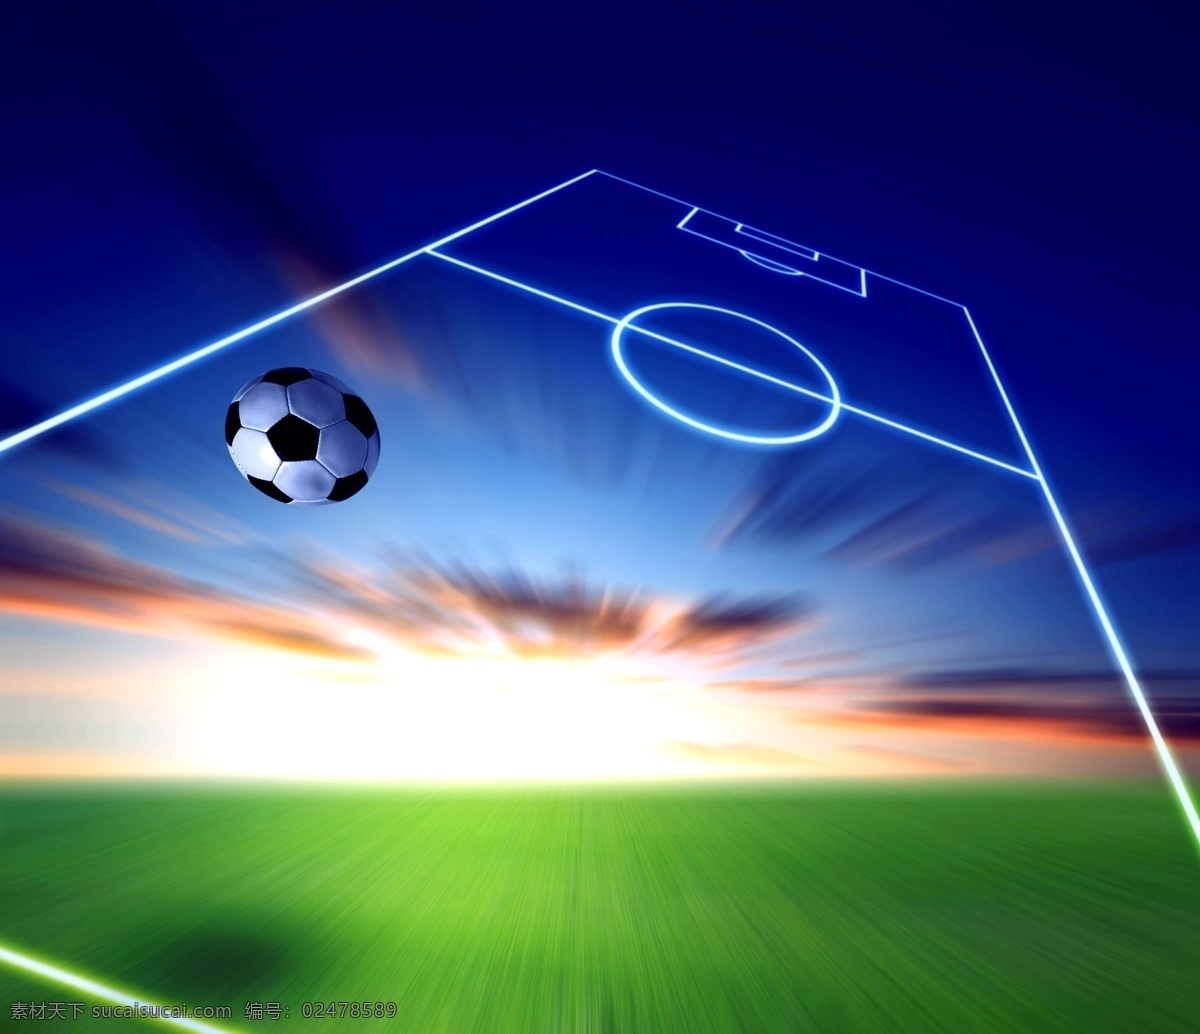 足球图片 草地 飞 光 球场 射线 体育运动 天空 足球设计素材 足球模板下载 足球 求 云 文化艺术 矢量图 日常生活